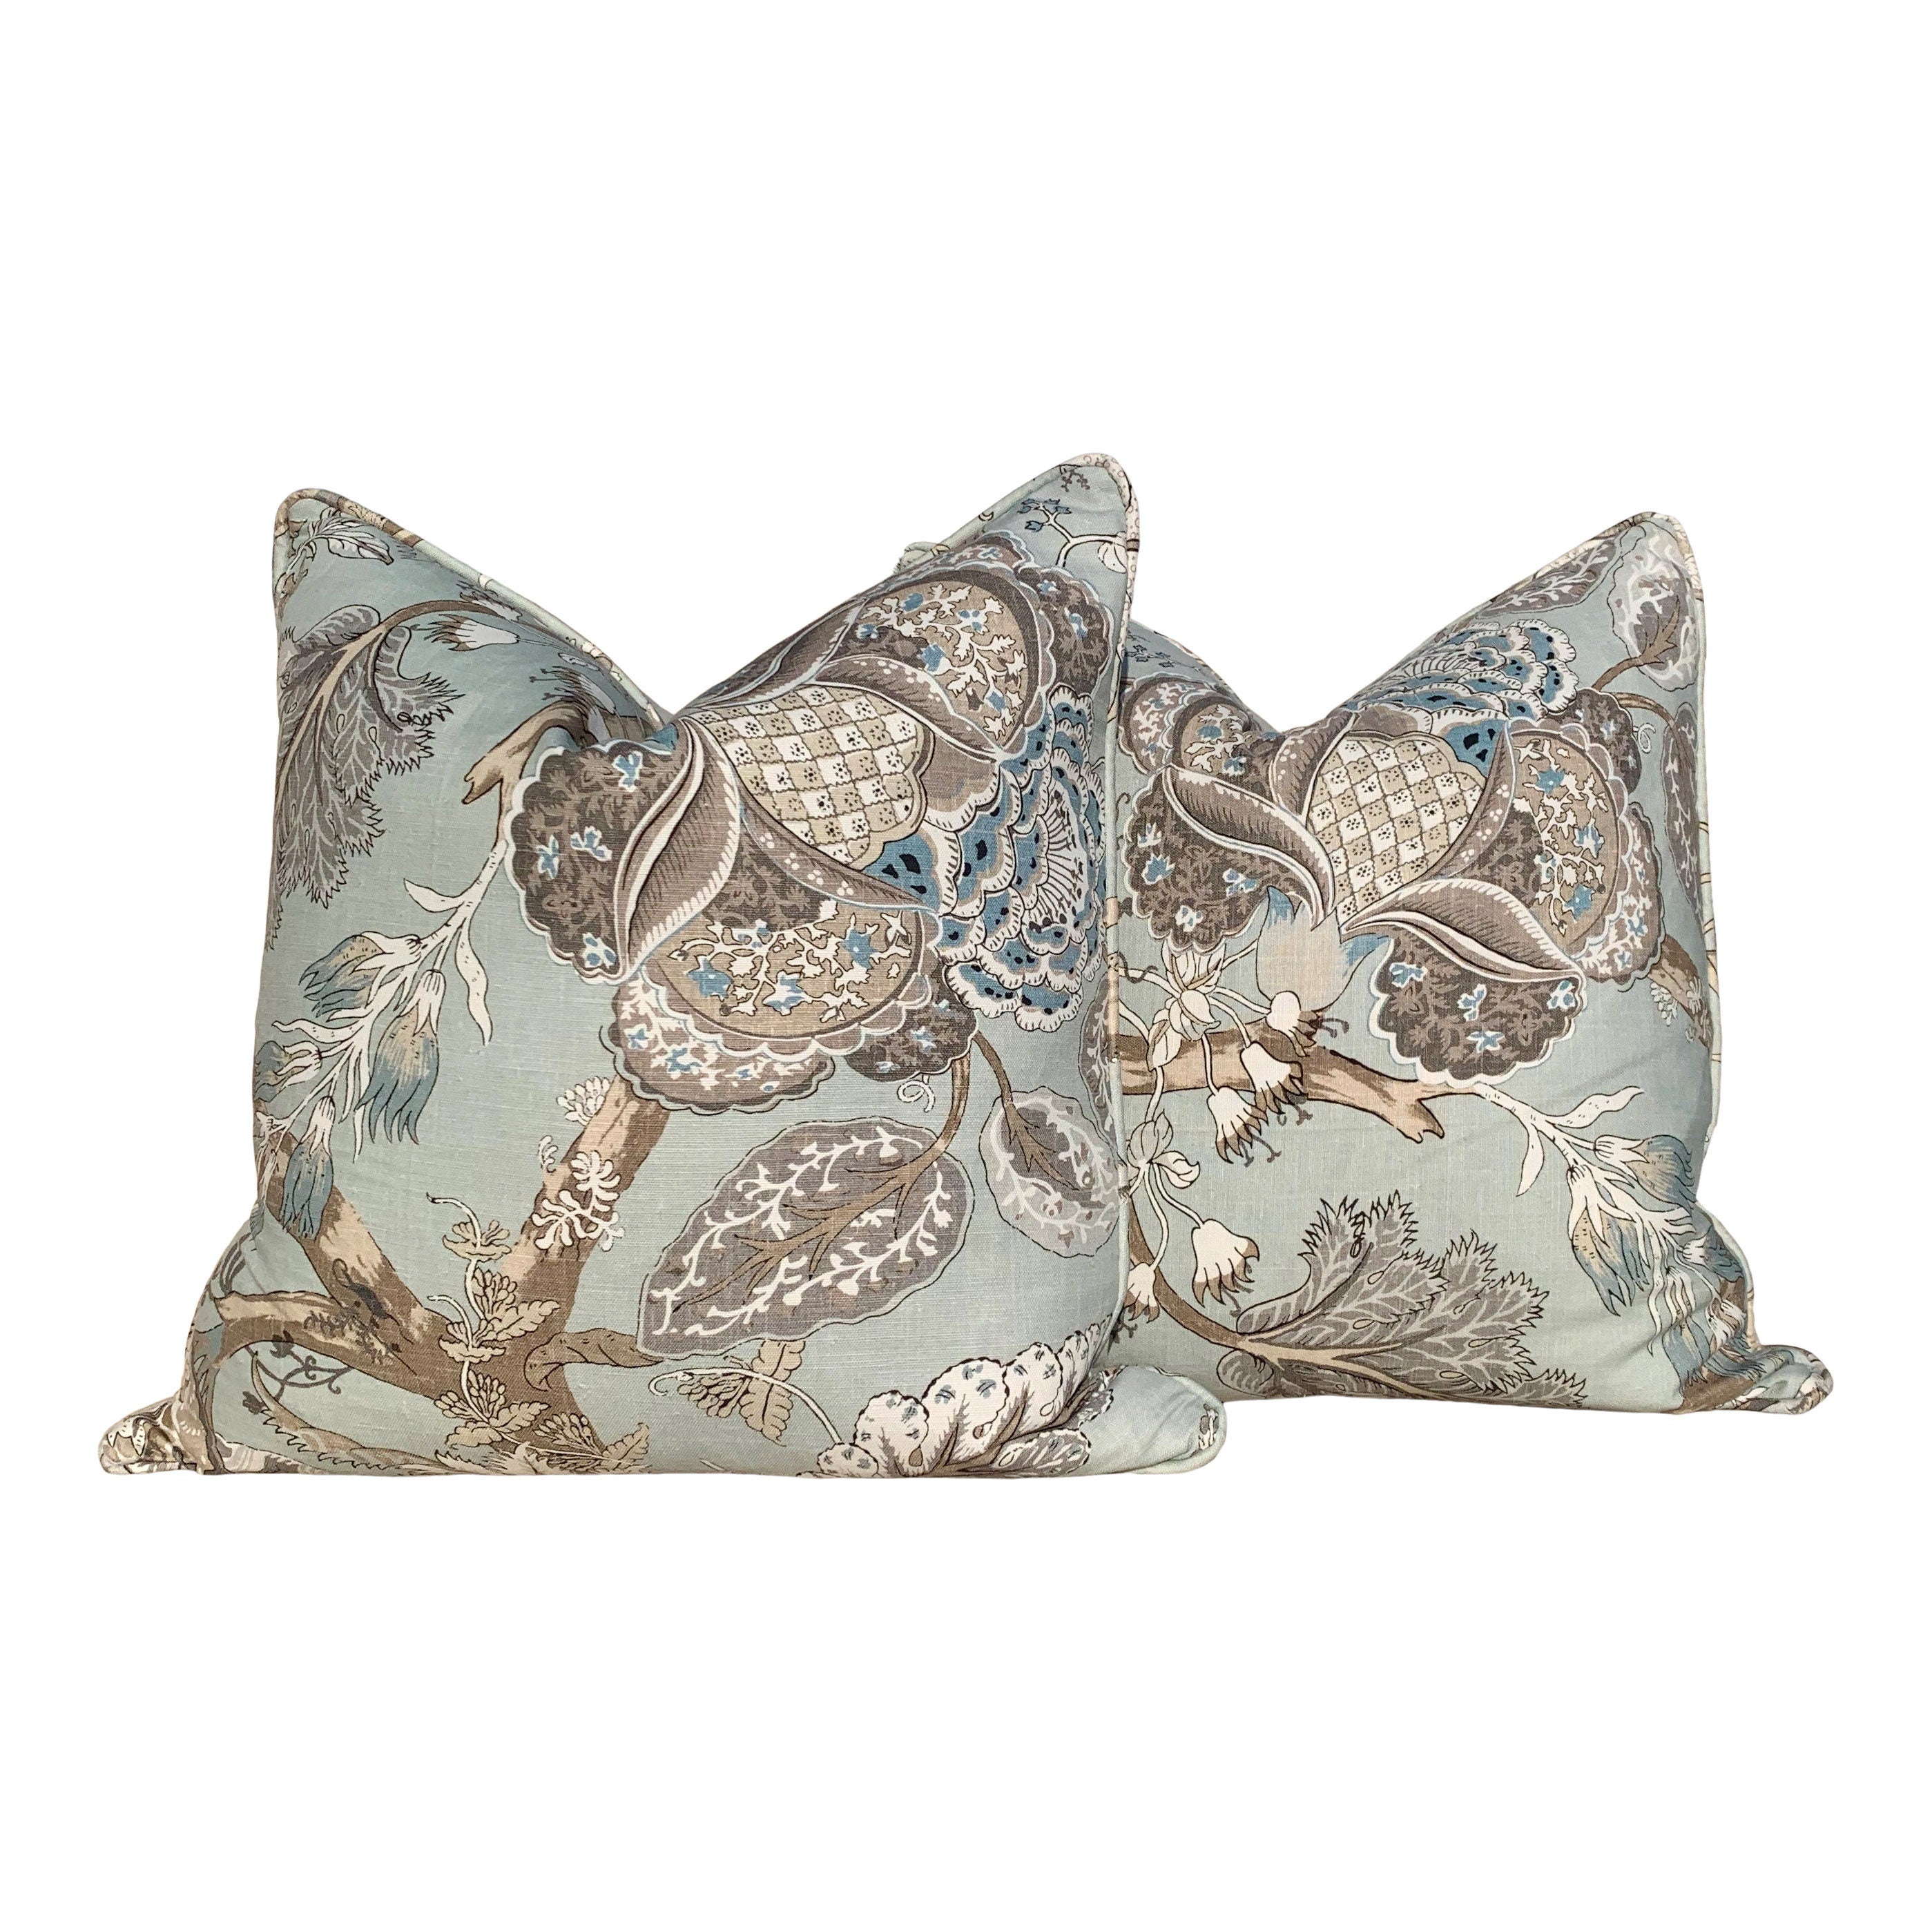 Thibaut Kalamkari Pillow in Aqua Blue. Lumbar Pillow. Designer pillows, decorative pillow cover, accent throw